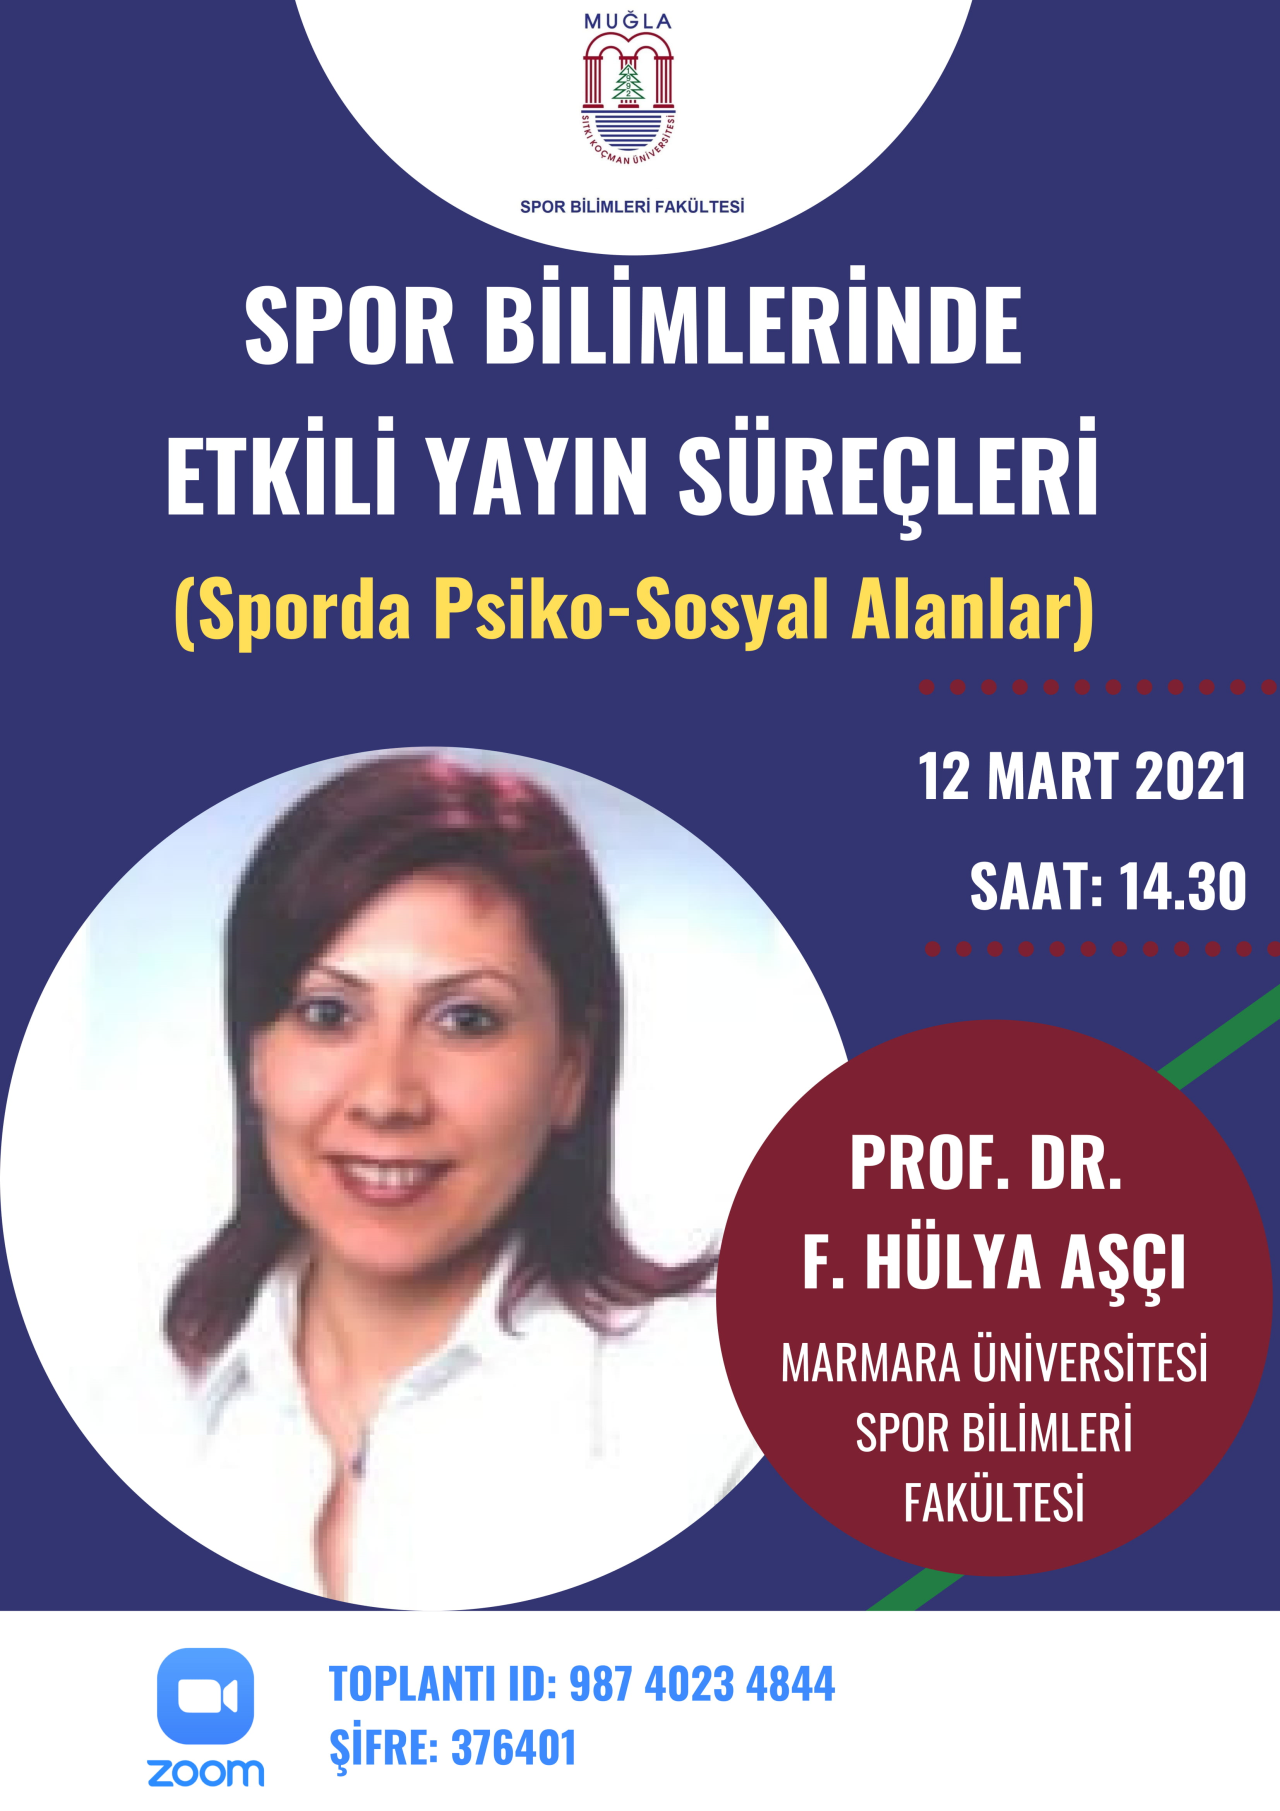 "Spor Bilimlerinde Etkili Yayın Süreçleri" - Prof. Dr. F. Hülya AŞÇI